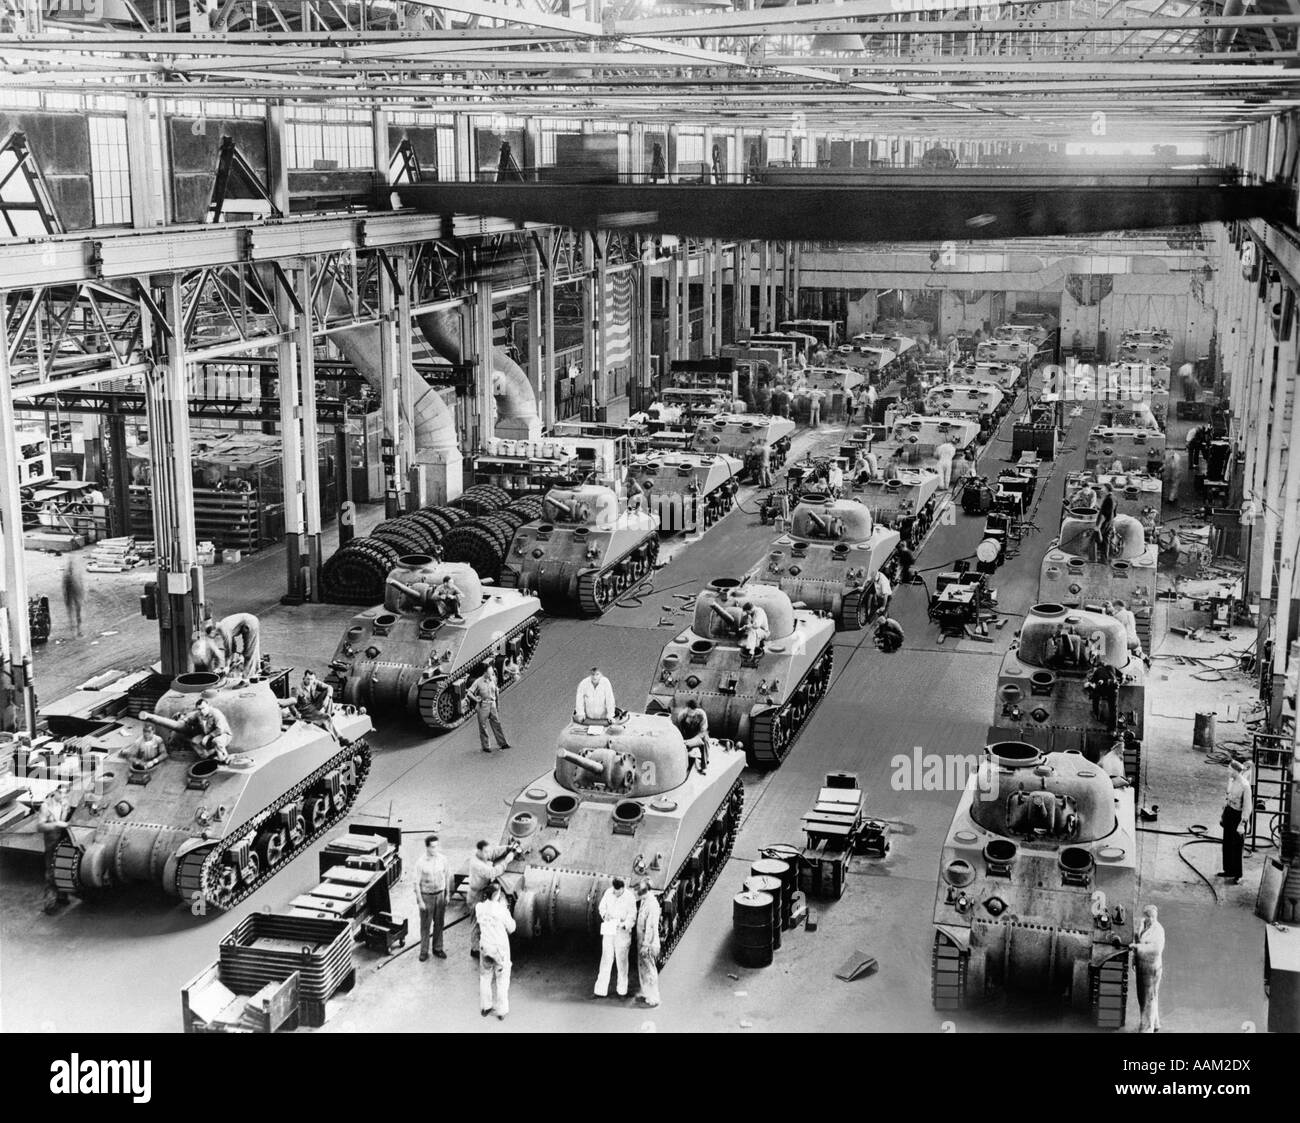 1940s GENERAL SHERMAN SERBATOI IN PRODUZIONE Chrysler Corporation fabbrica impianto bellica WW2 WWII GUERRA MONDIALE 2 fabbriche Foto Stock